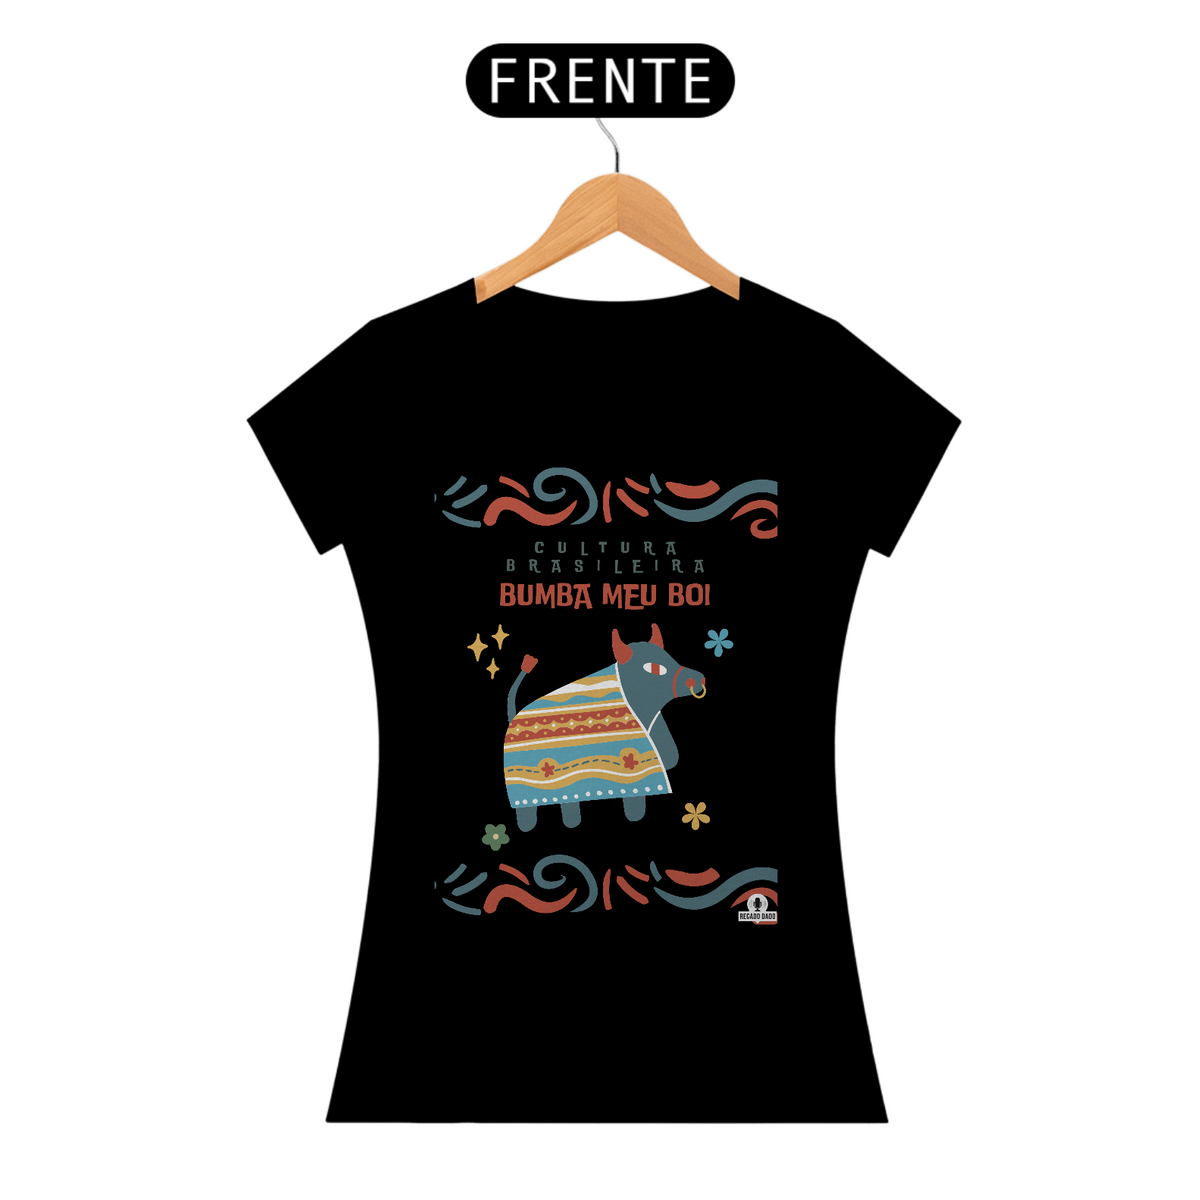 Nome do produto: Camiseta feminina do Bumba Meu Boi, tradicional expressão cultural brasileira.